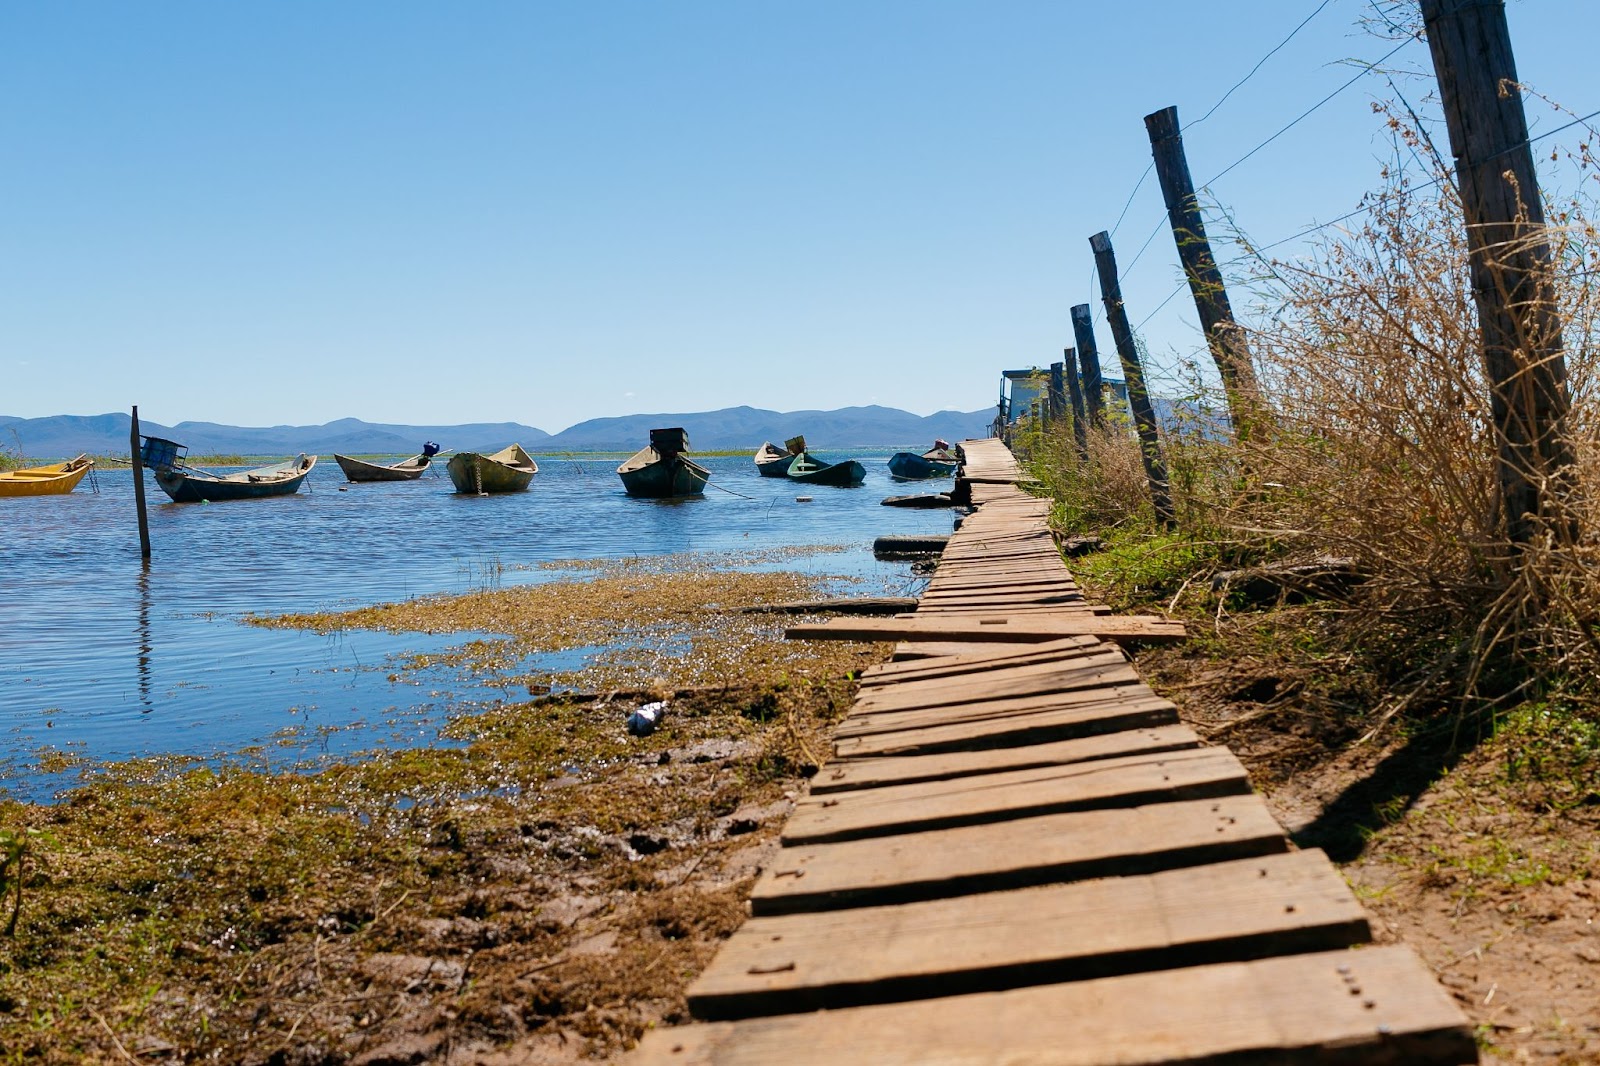 Pequeno caminho de madeira às margens do Rio São Francisco. As águas escuras do rio têm pequenas embarcações coloridas, que estão vazias